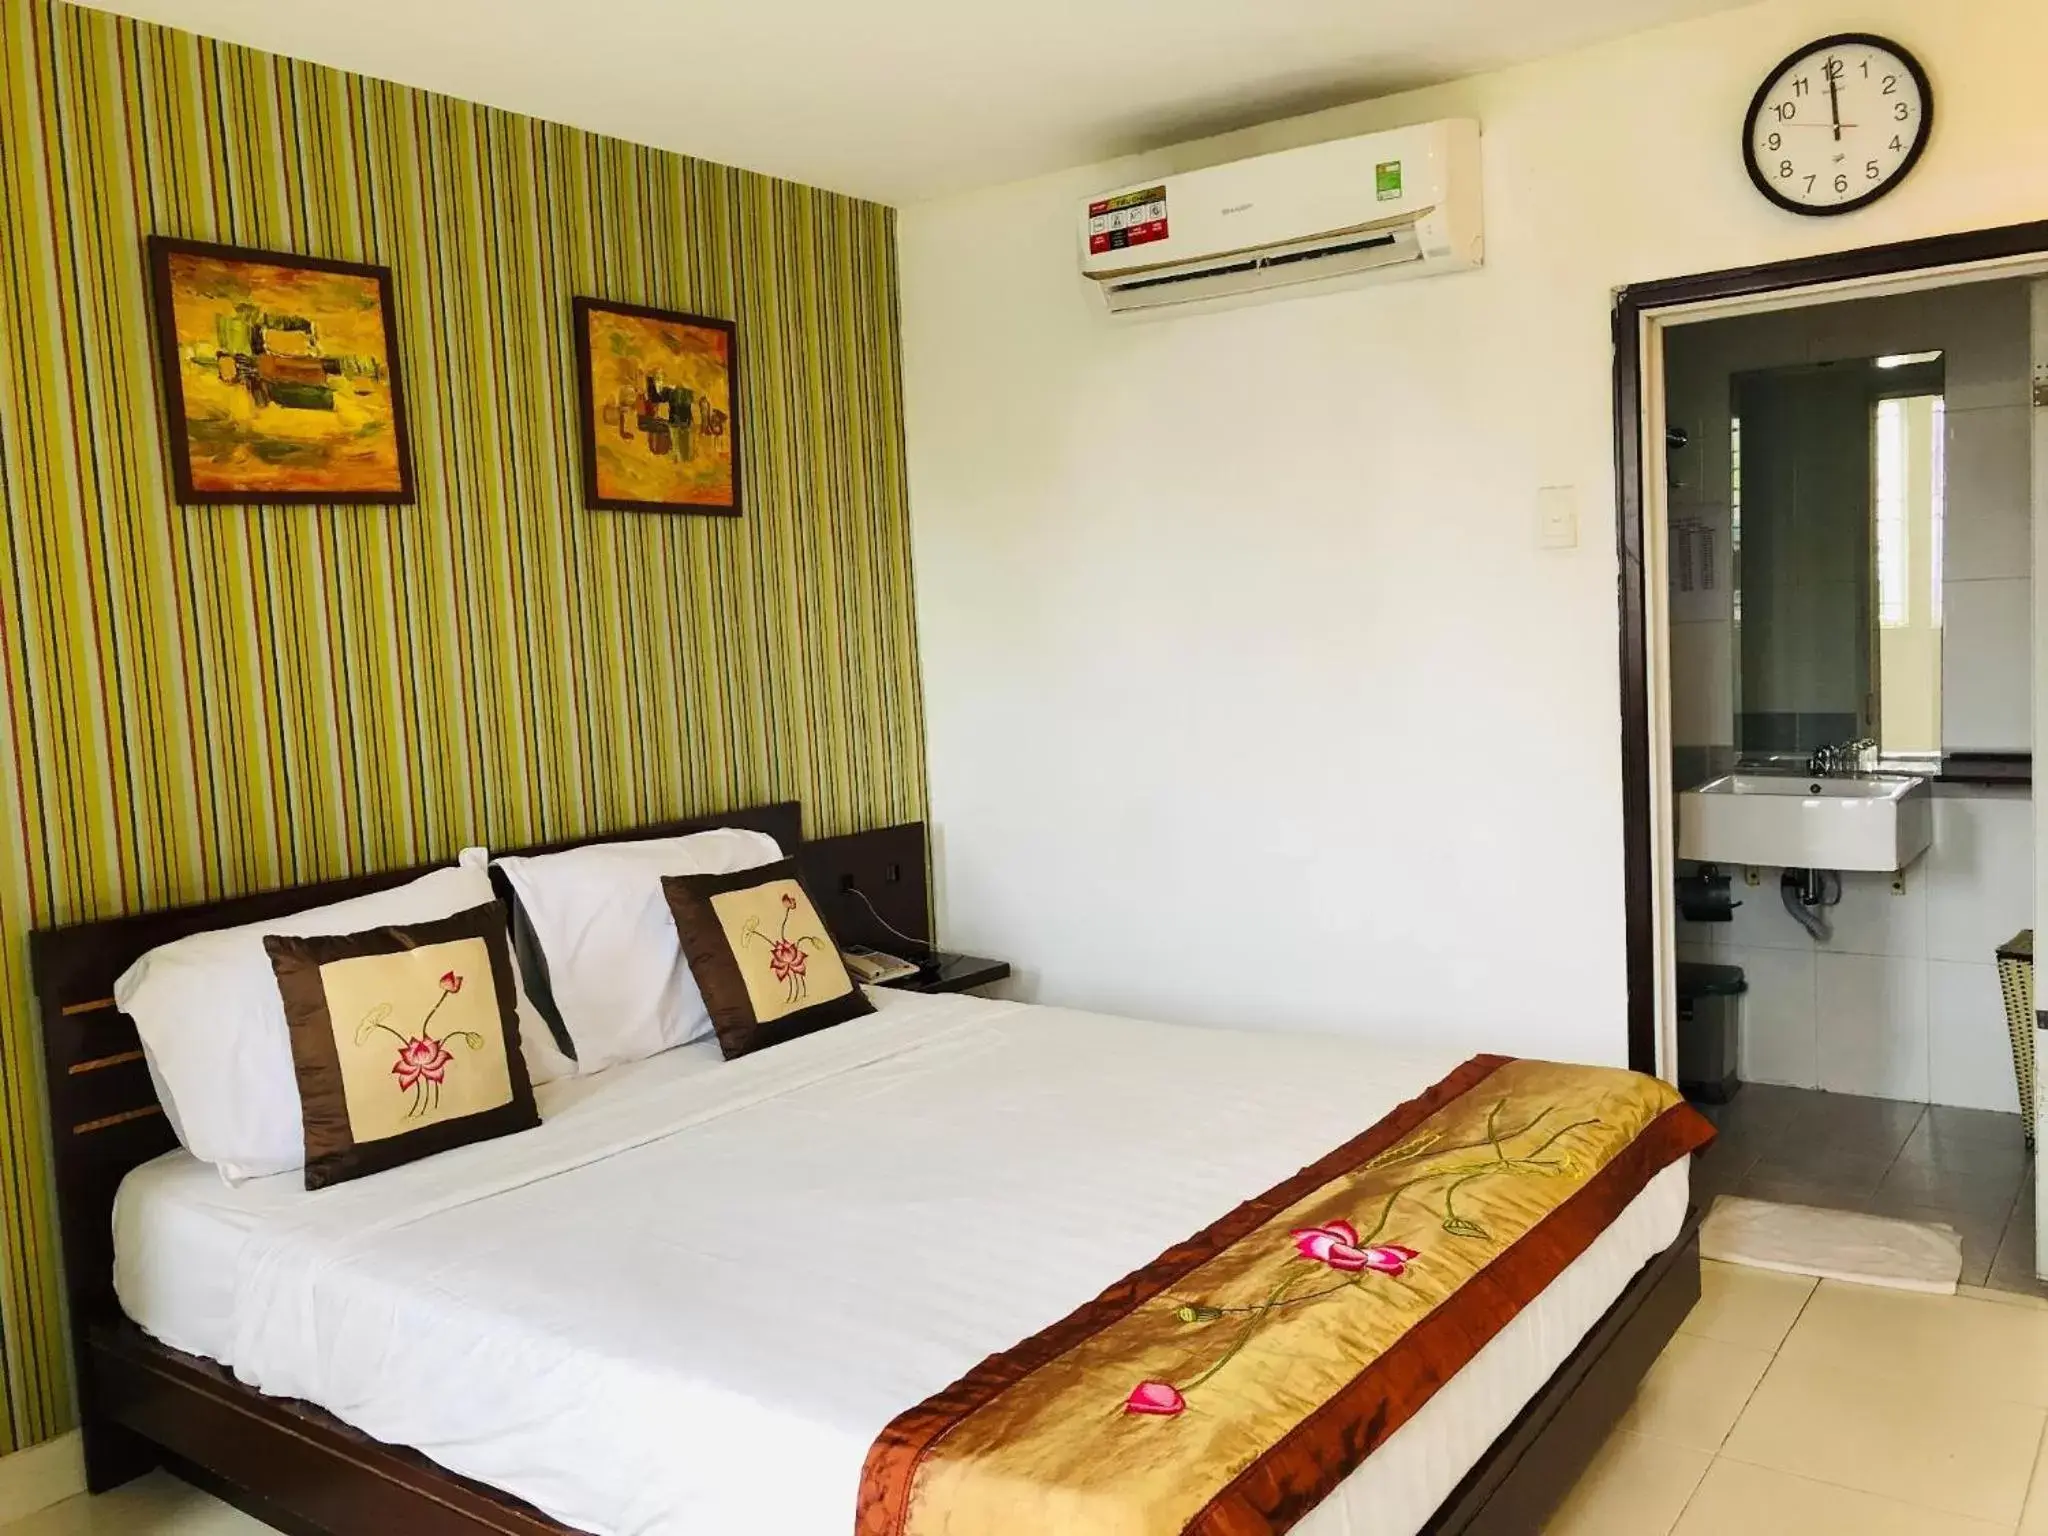 Bed in Sen Sai Gon Hotel Ben Thanh Market